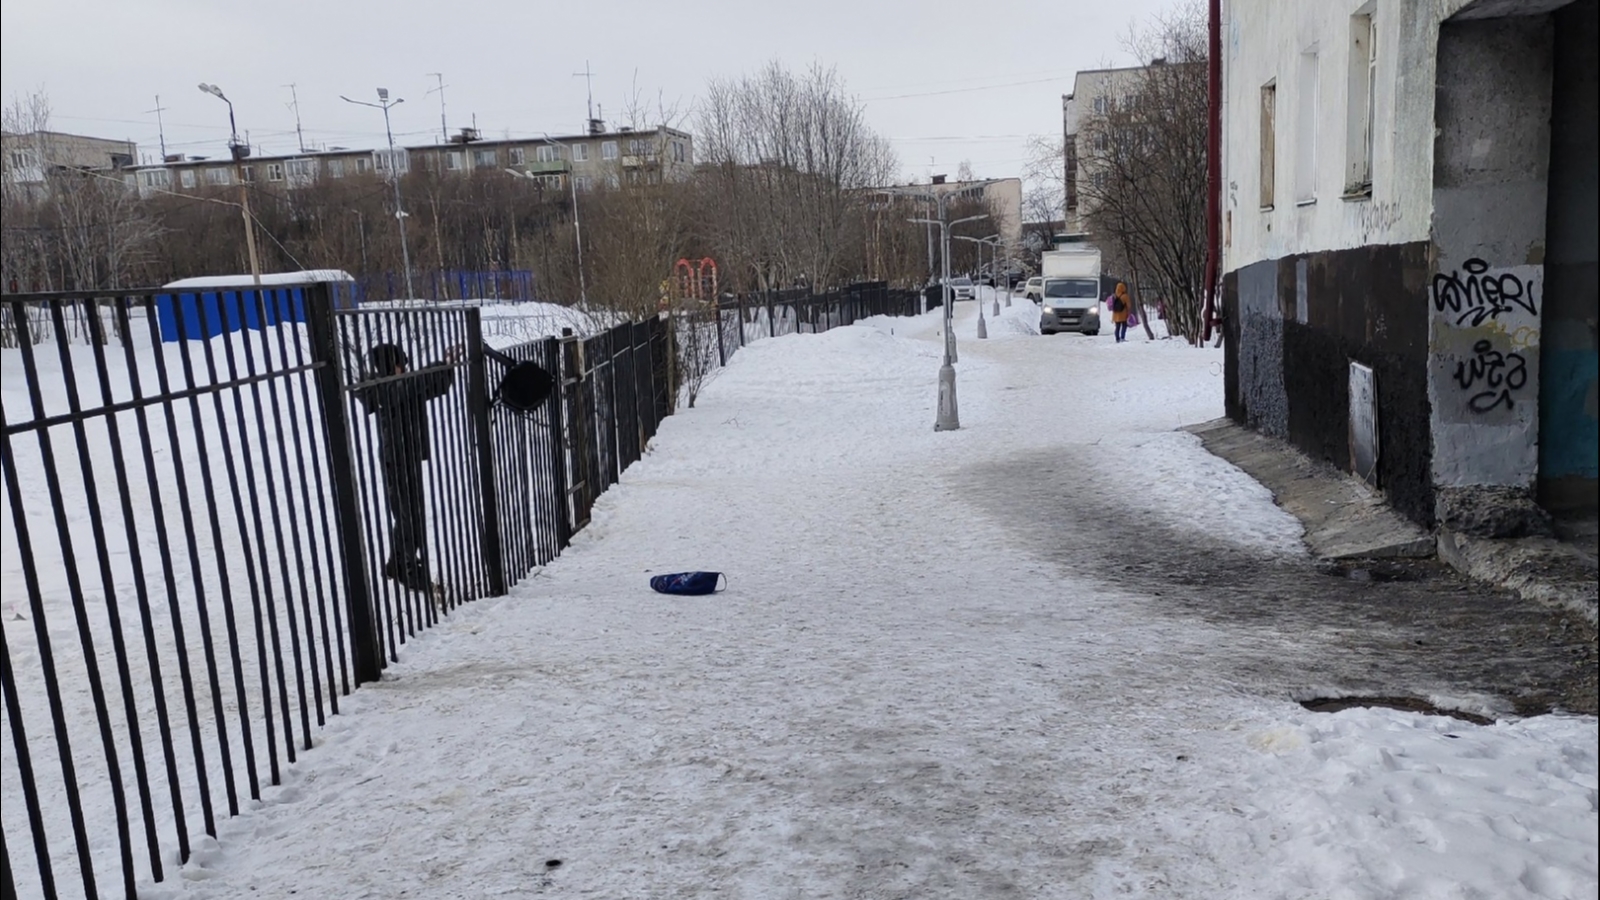 Детям в Мурманске приходится лезть через забор, чтобы попасть в школу